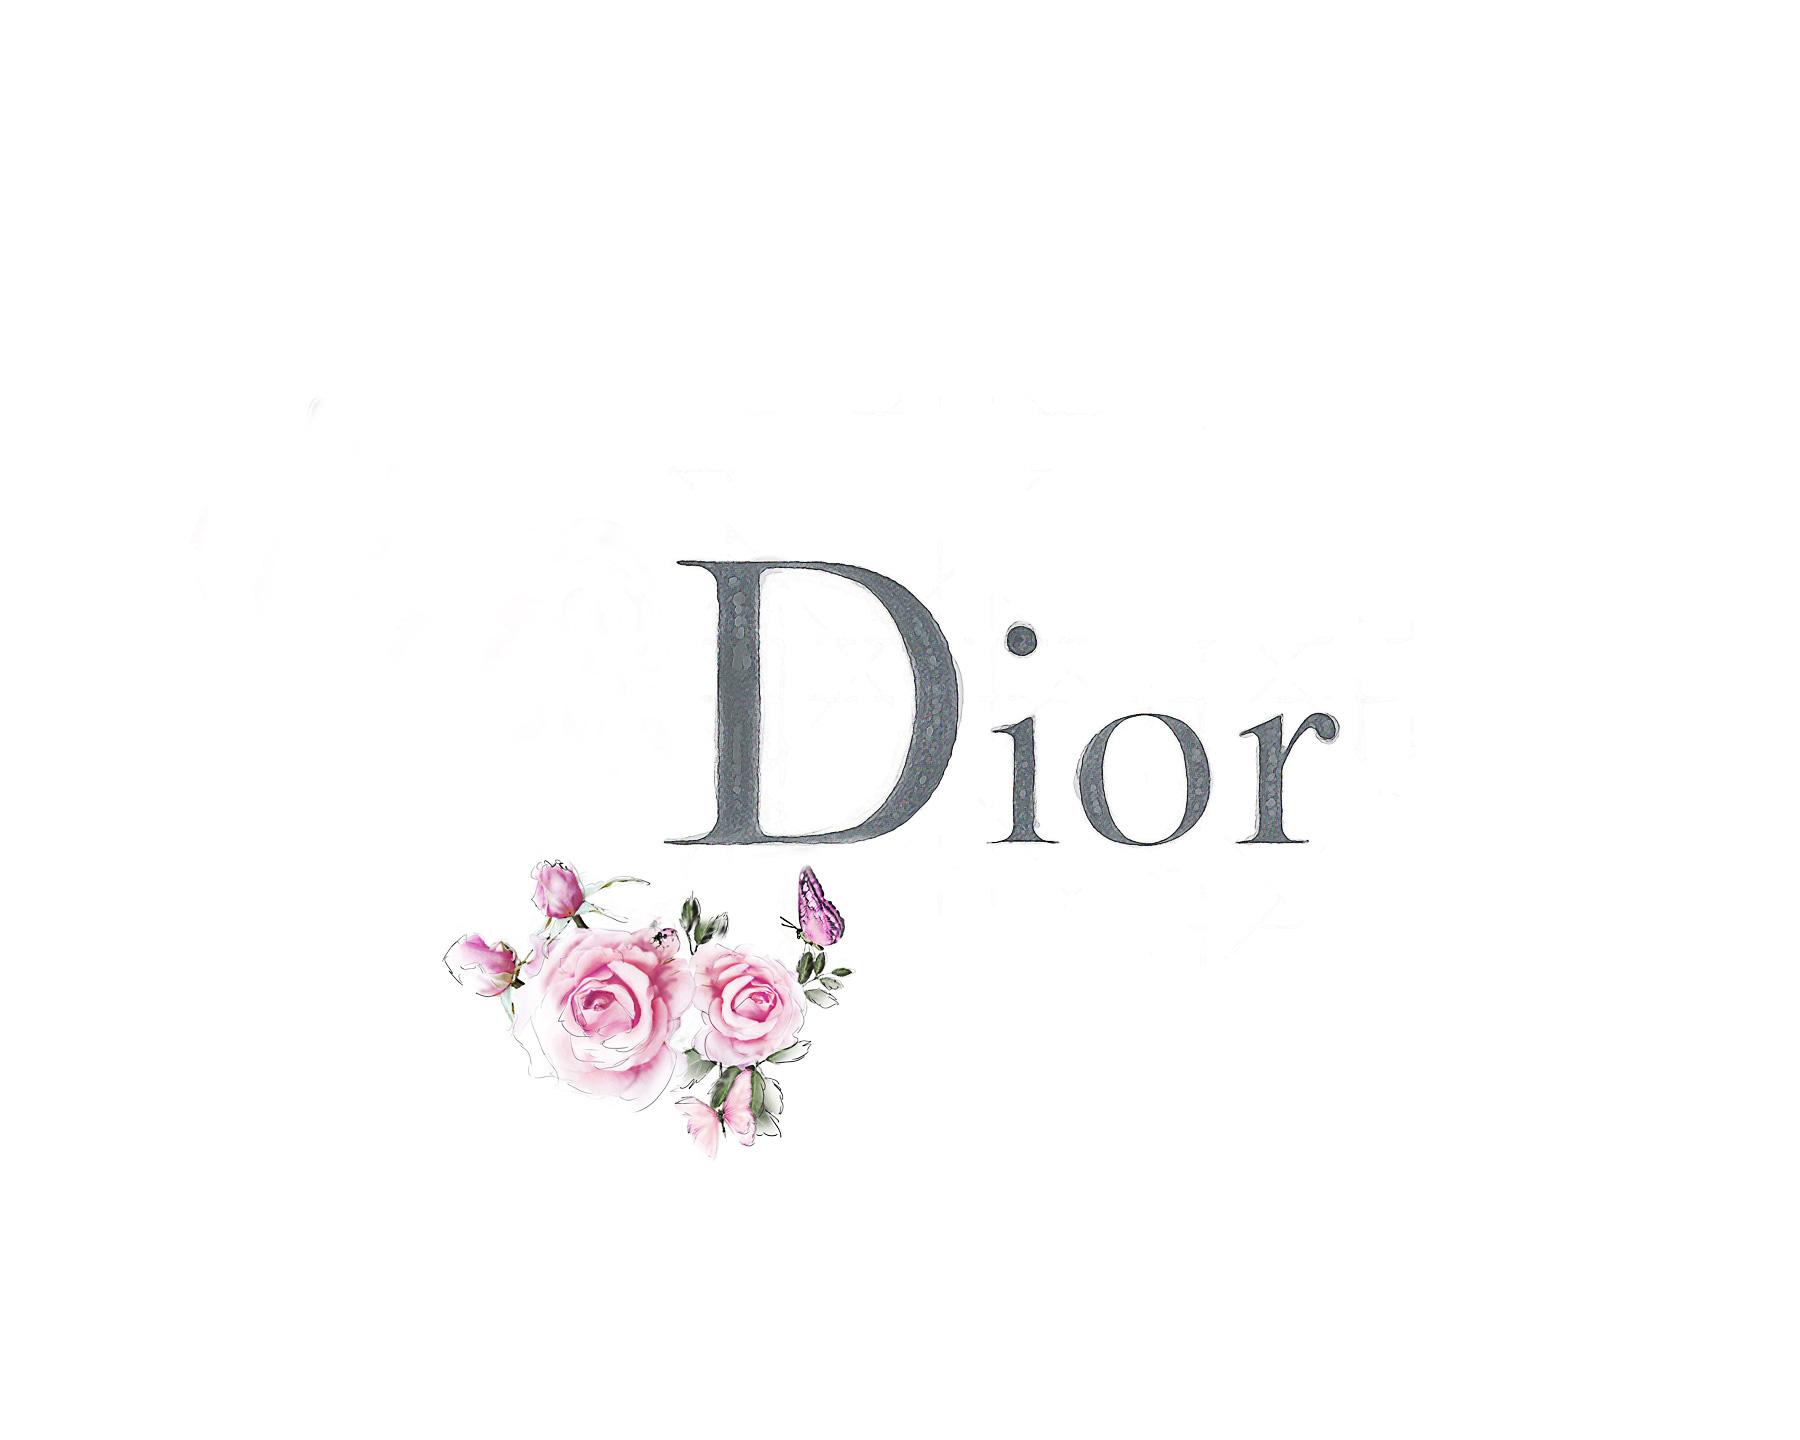 30k Dior Pictures  Download Free Images on Unsplash